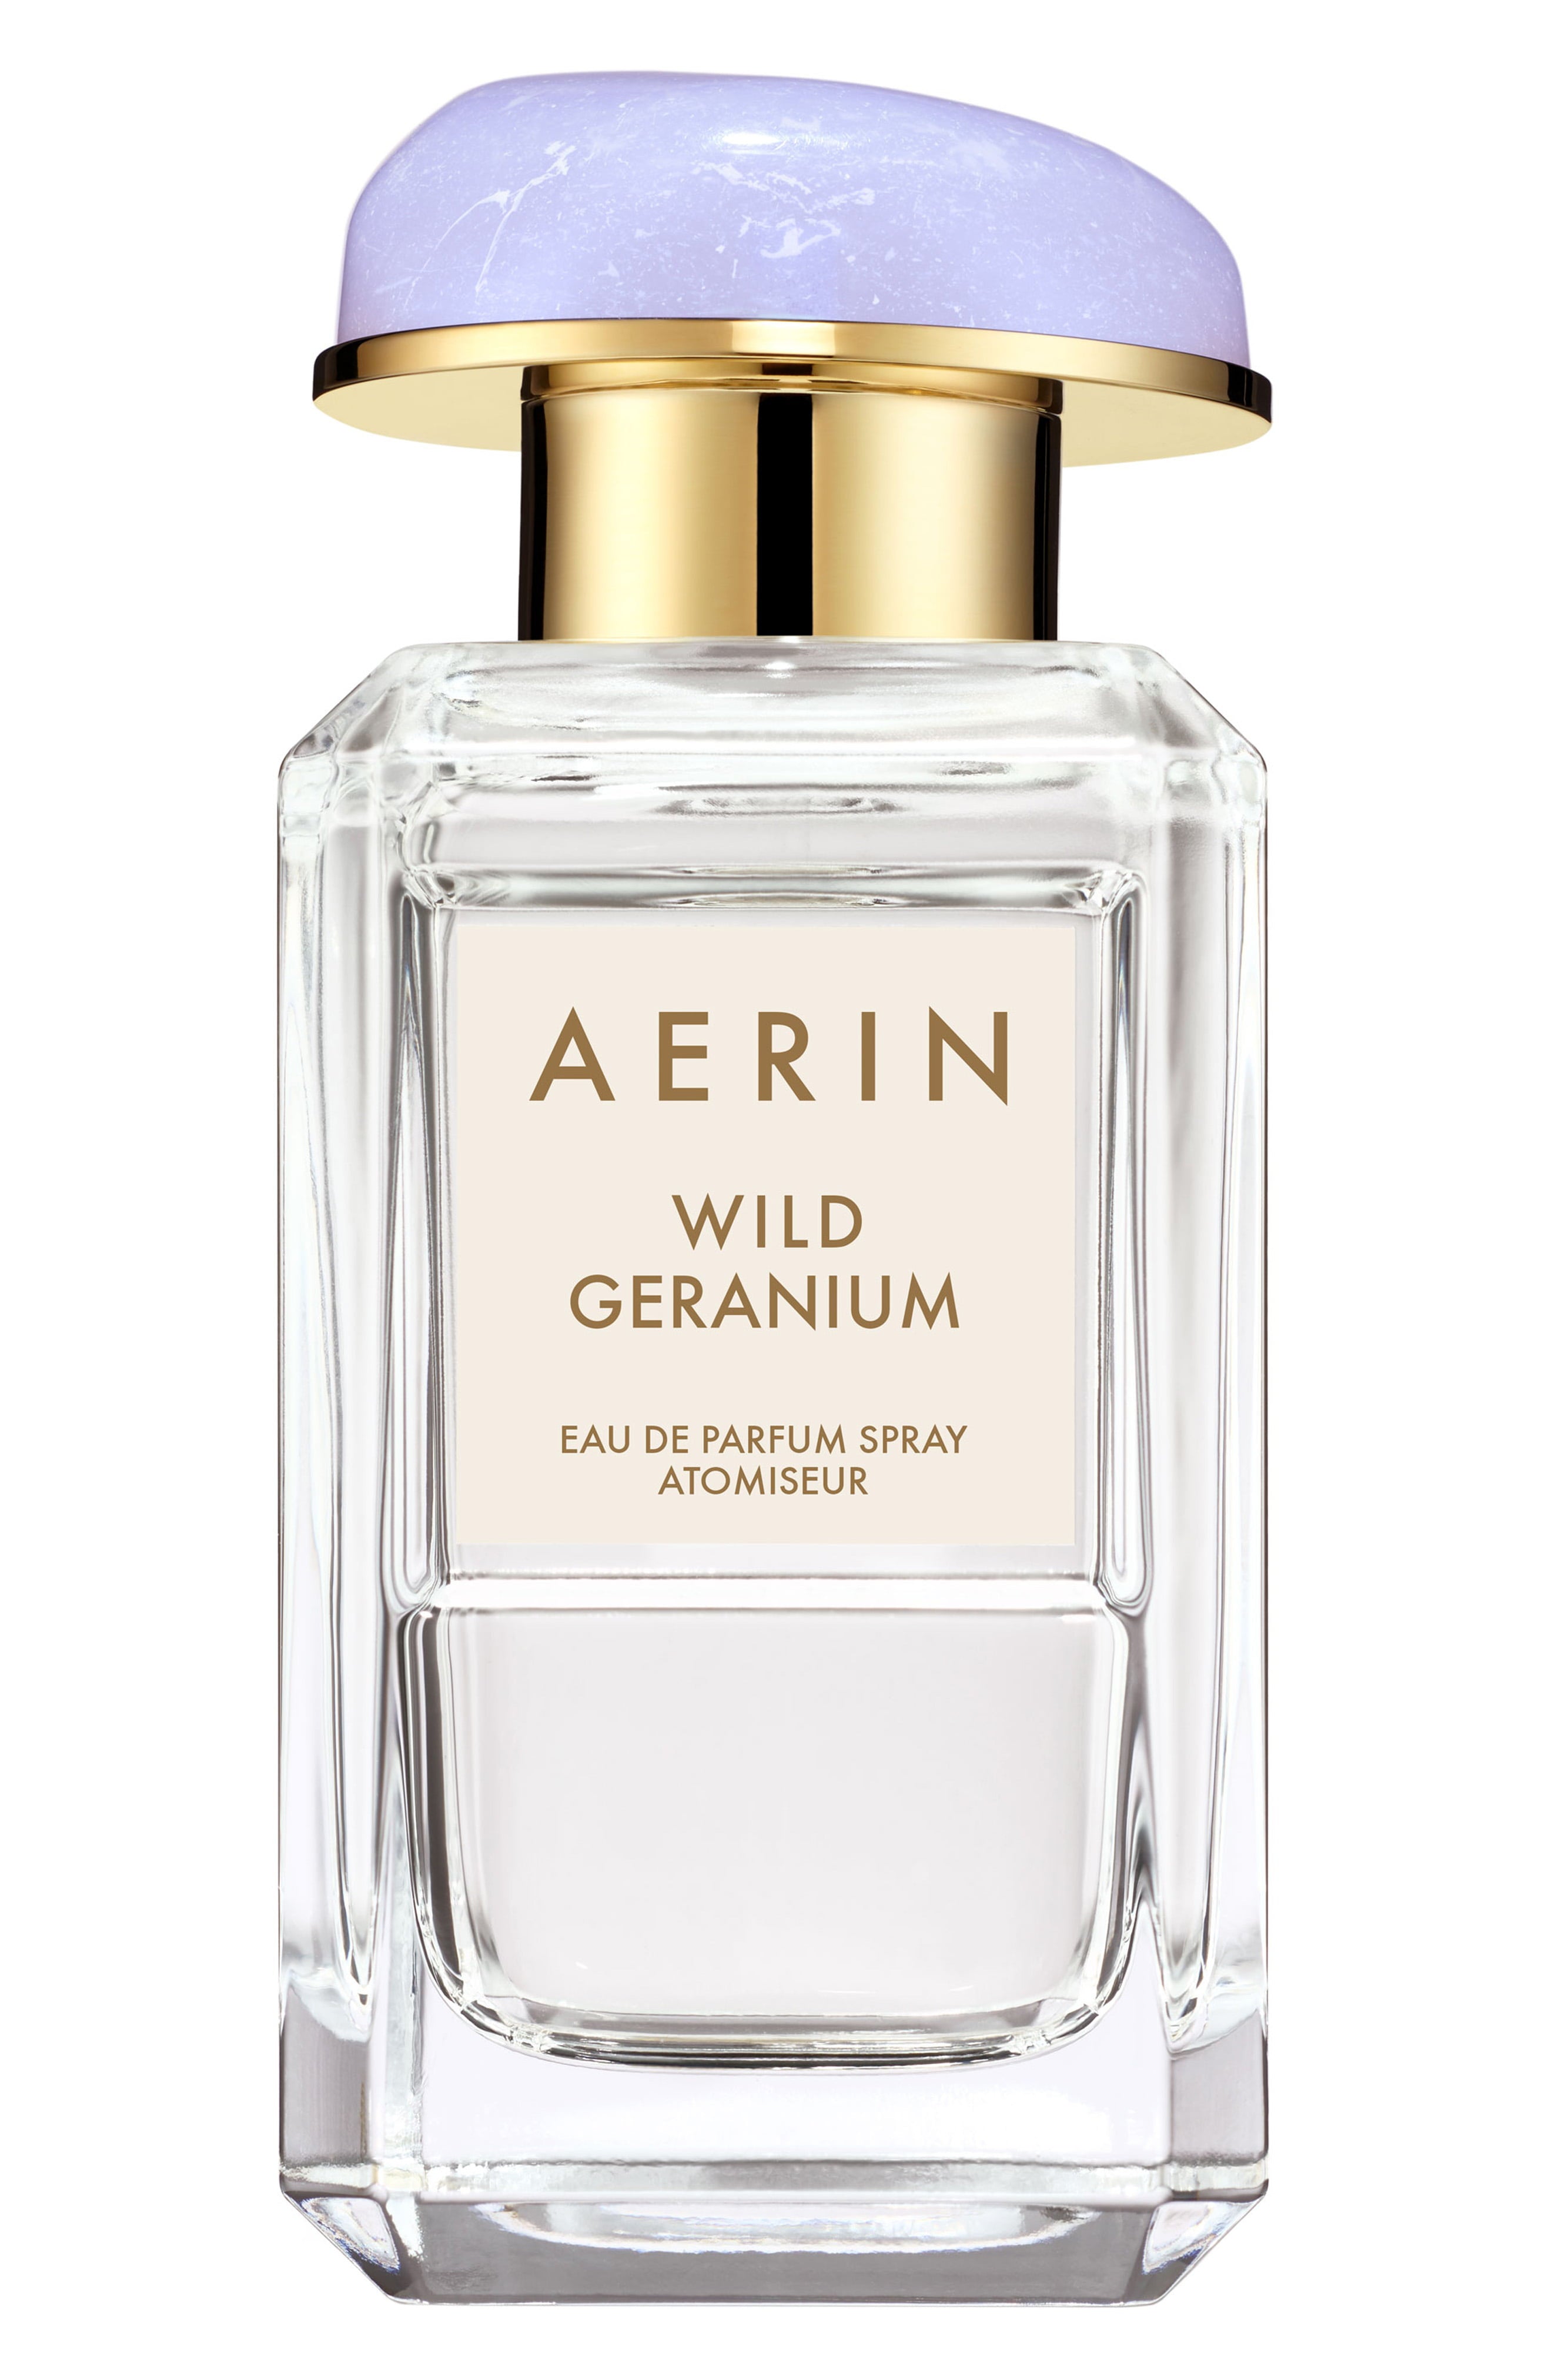 AERIN Wild Geranium Eau de Parfum Spray 1.7 oz